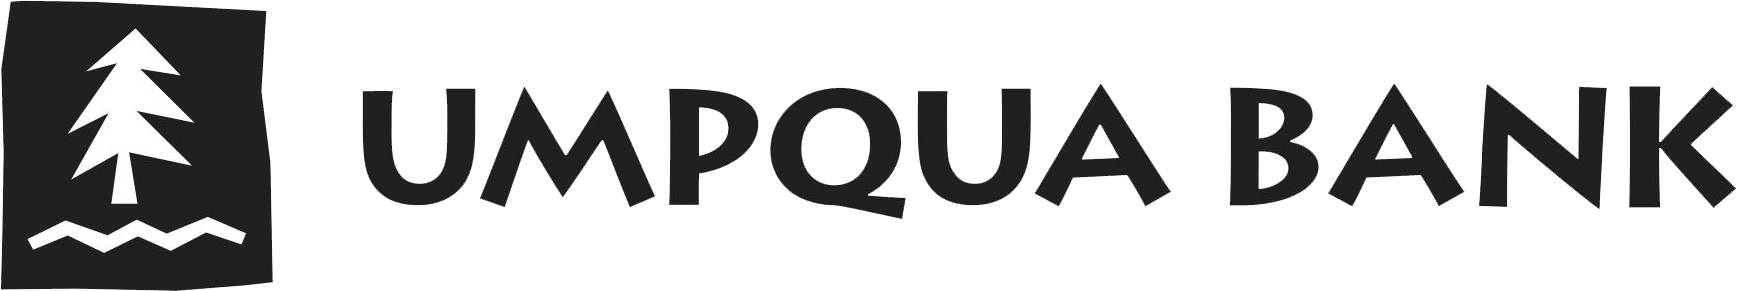 Umpqua Bank logo.